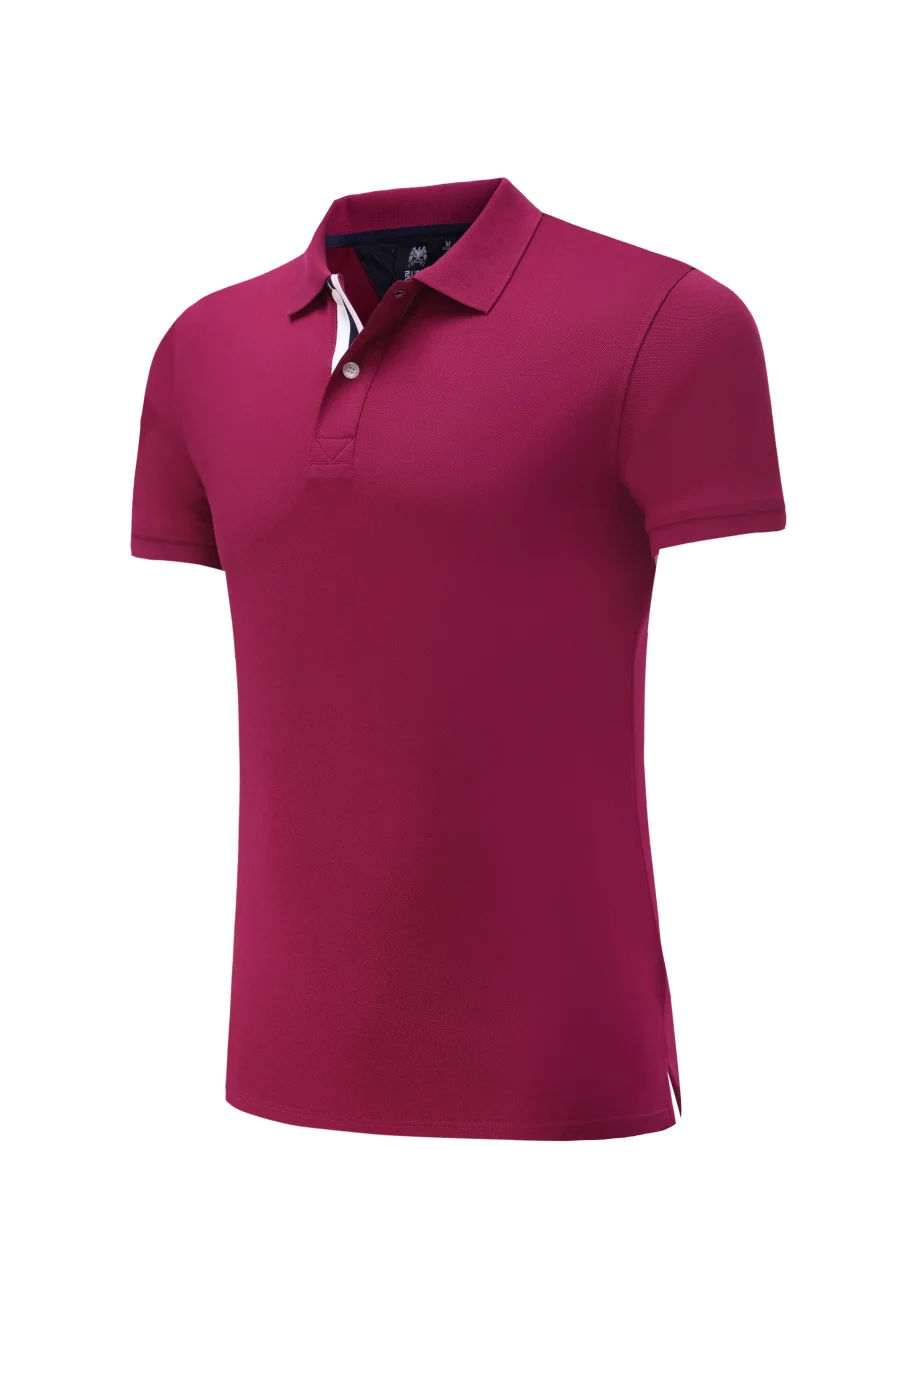 Мужская рубашка для гольфа с коротким рукавом с воротником-стойкой ropa de golf para hombre Спортивная футболка для бега быстросохнущая теннисная футболка